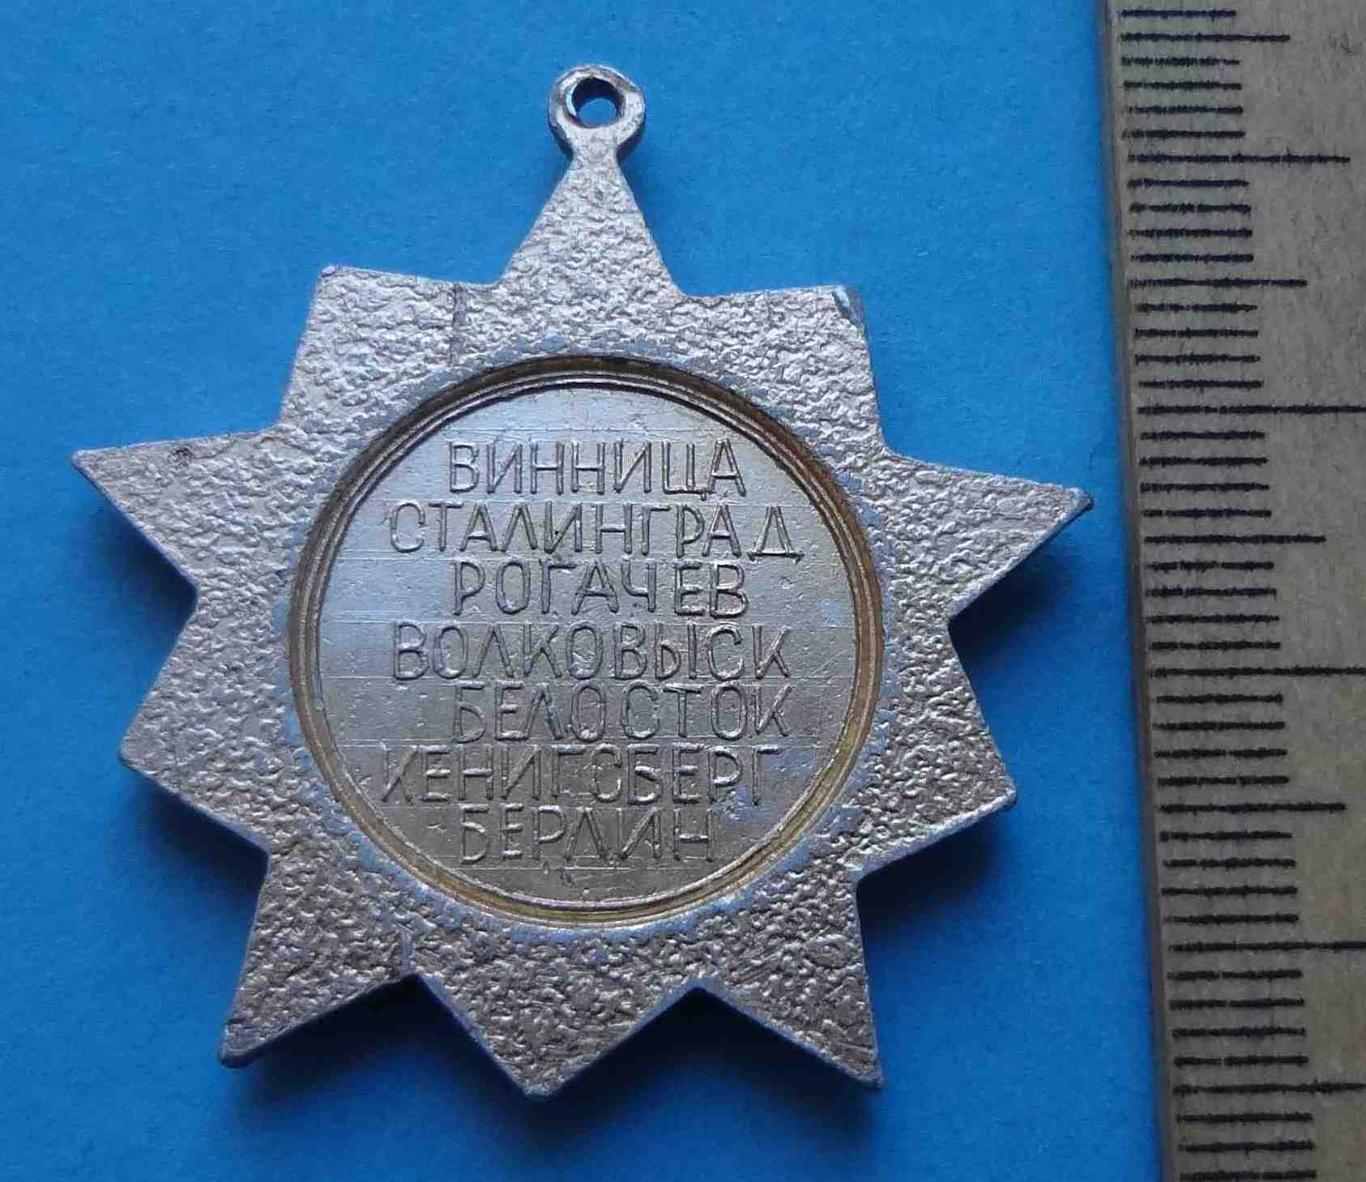 Ветеран 556 Белотокского стрелкового полка Гвардия Винница Сталинград Рогачев 2 2